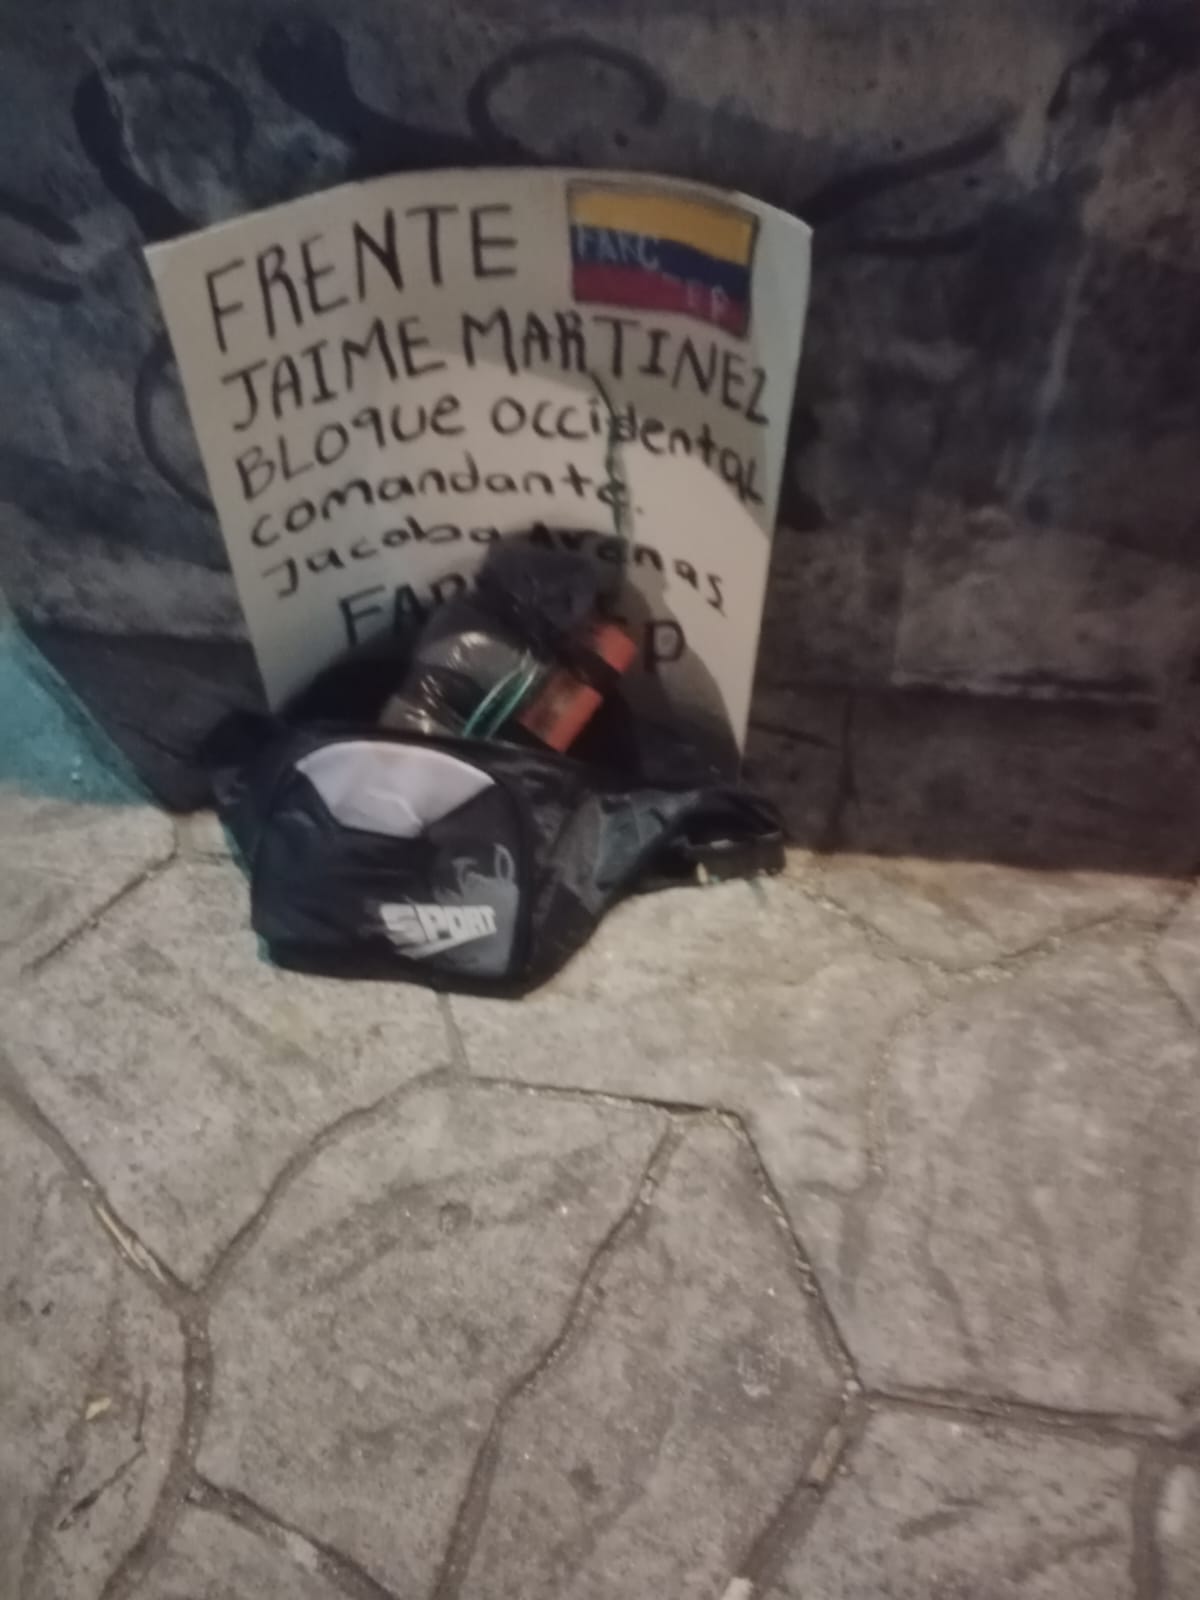 Elemento explosivo junto a cartel alusivo a las FARC fue dejado en el oeste de Cali